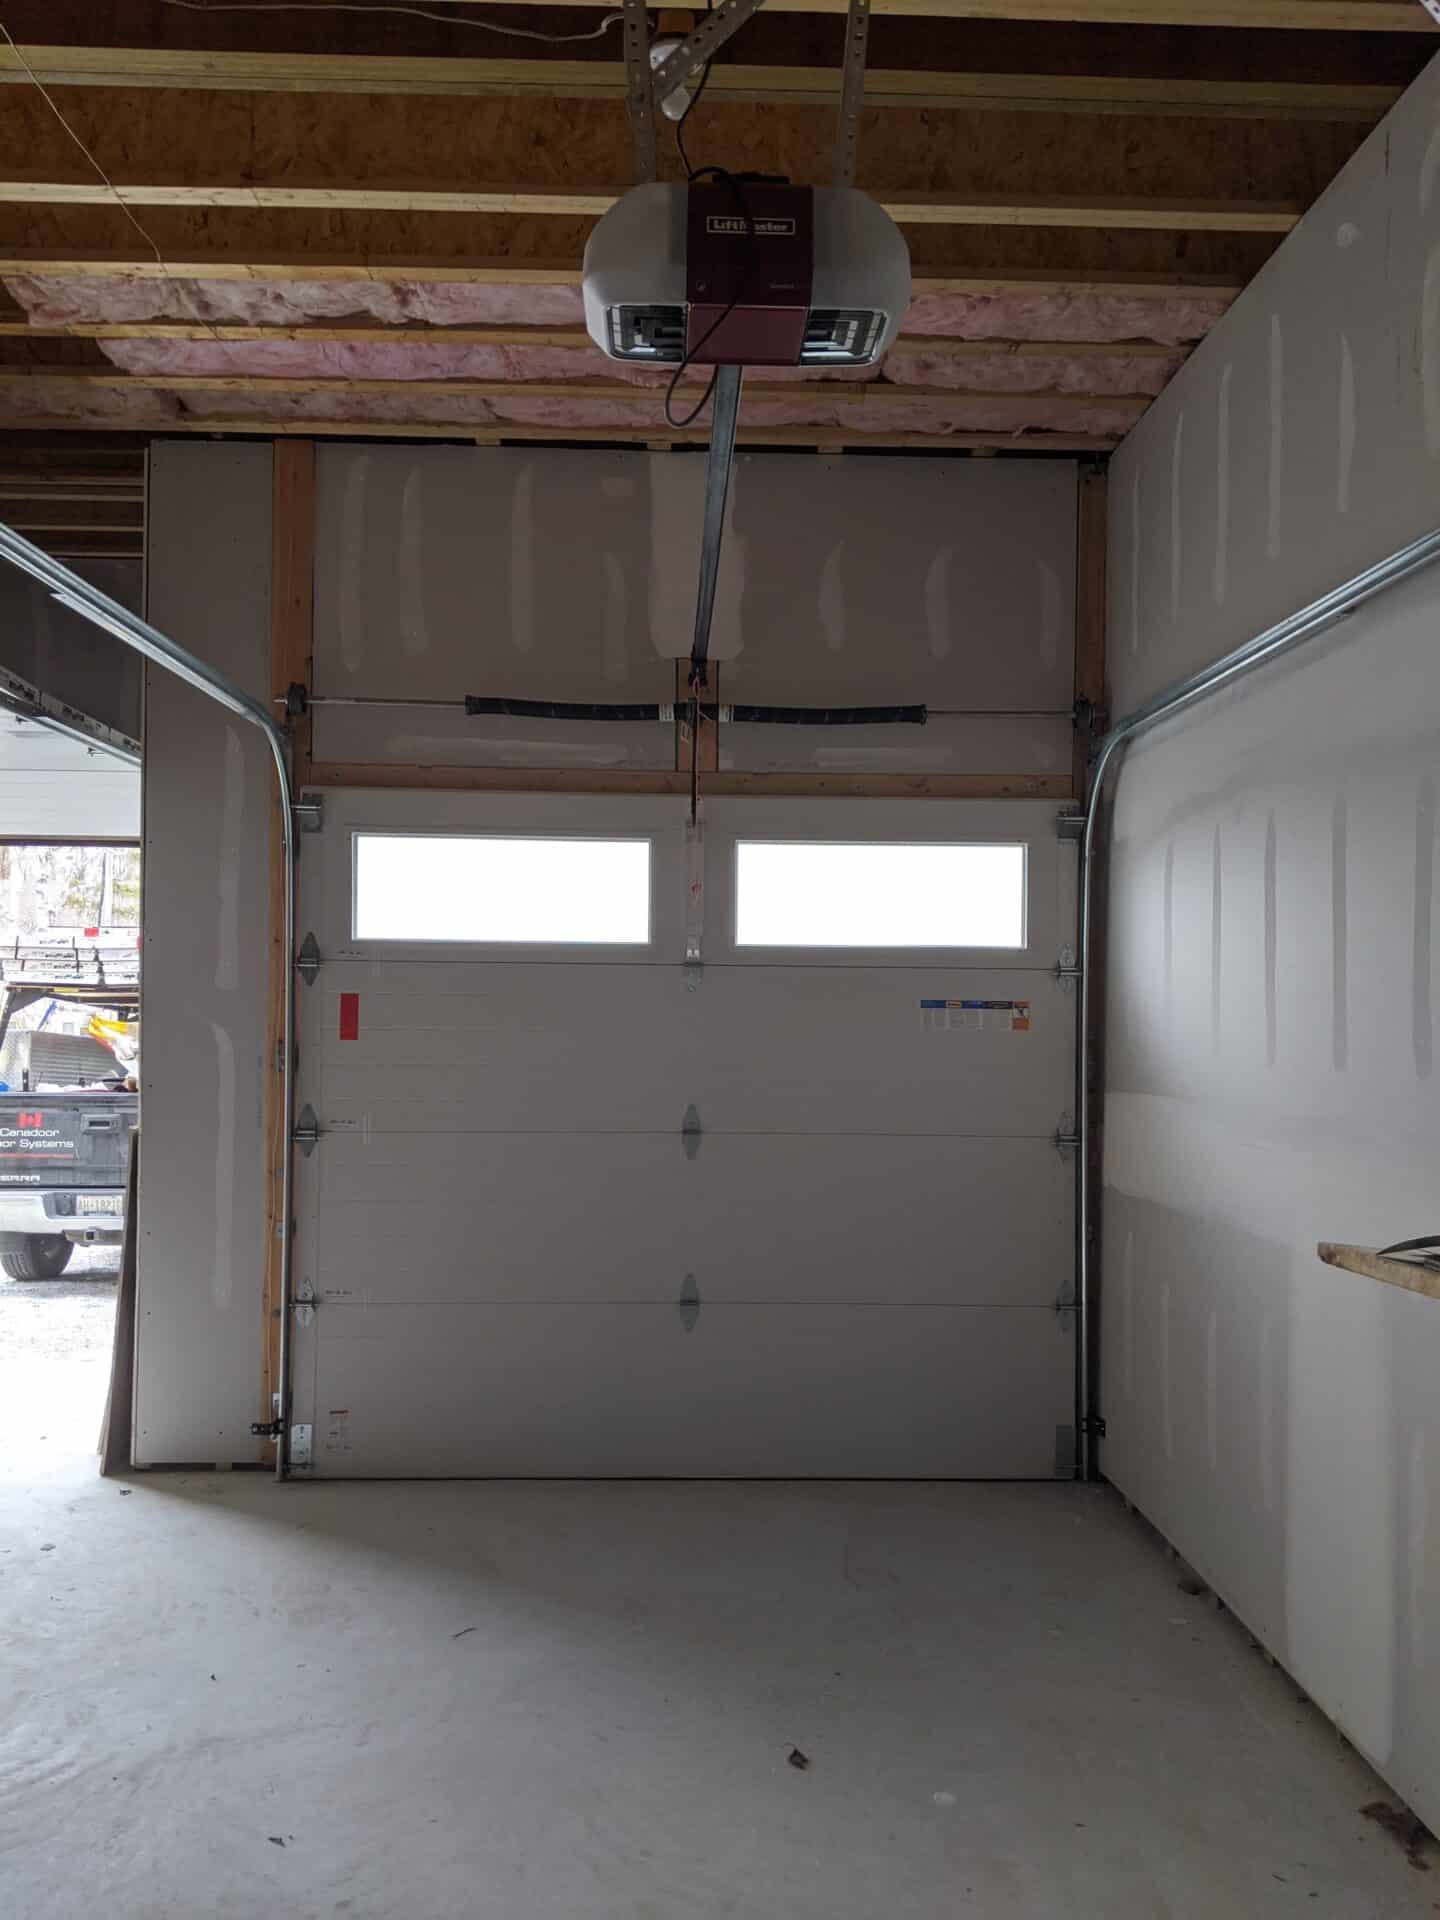 inside of a garage door showing faulty garage door springs